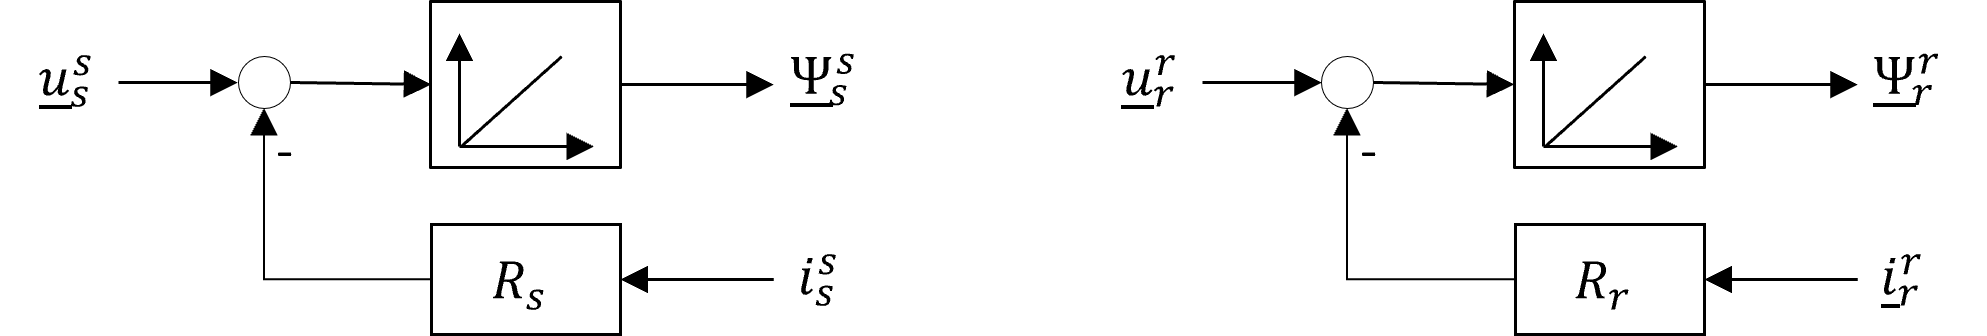 Blockschaltbild der Spannungsintegralgleichungen (links: Stator, rechts: Rotor)